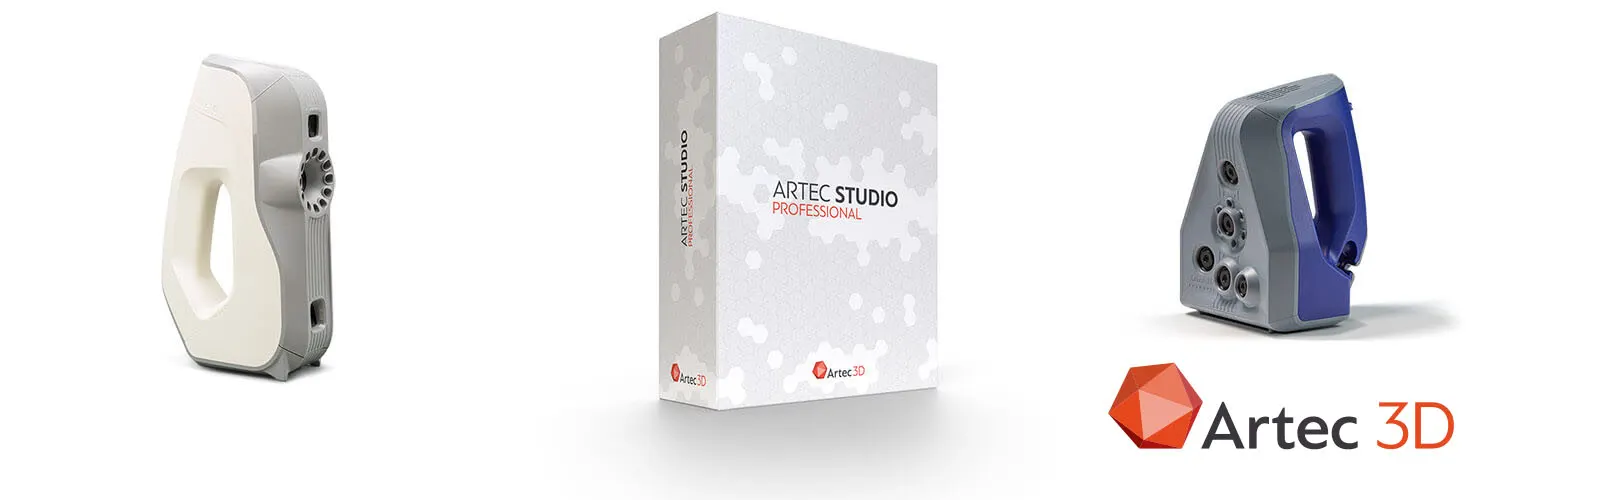 Artec Studio 15-3D Scanner-Artec Space Spider-Artec Eva